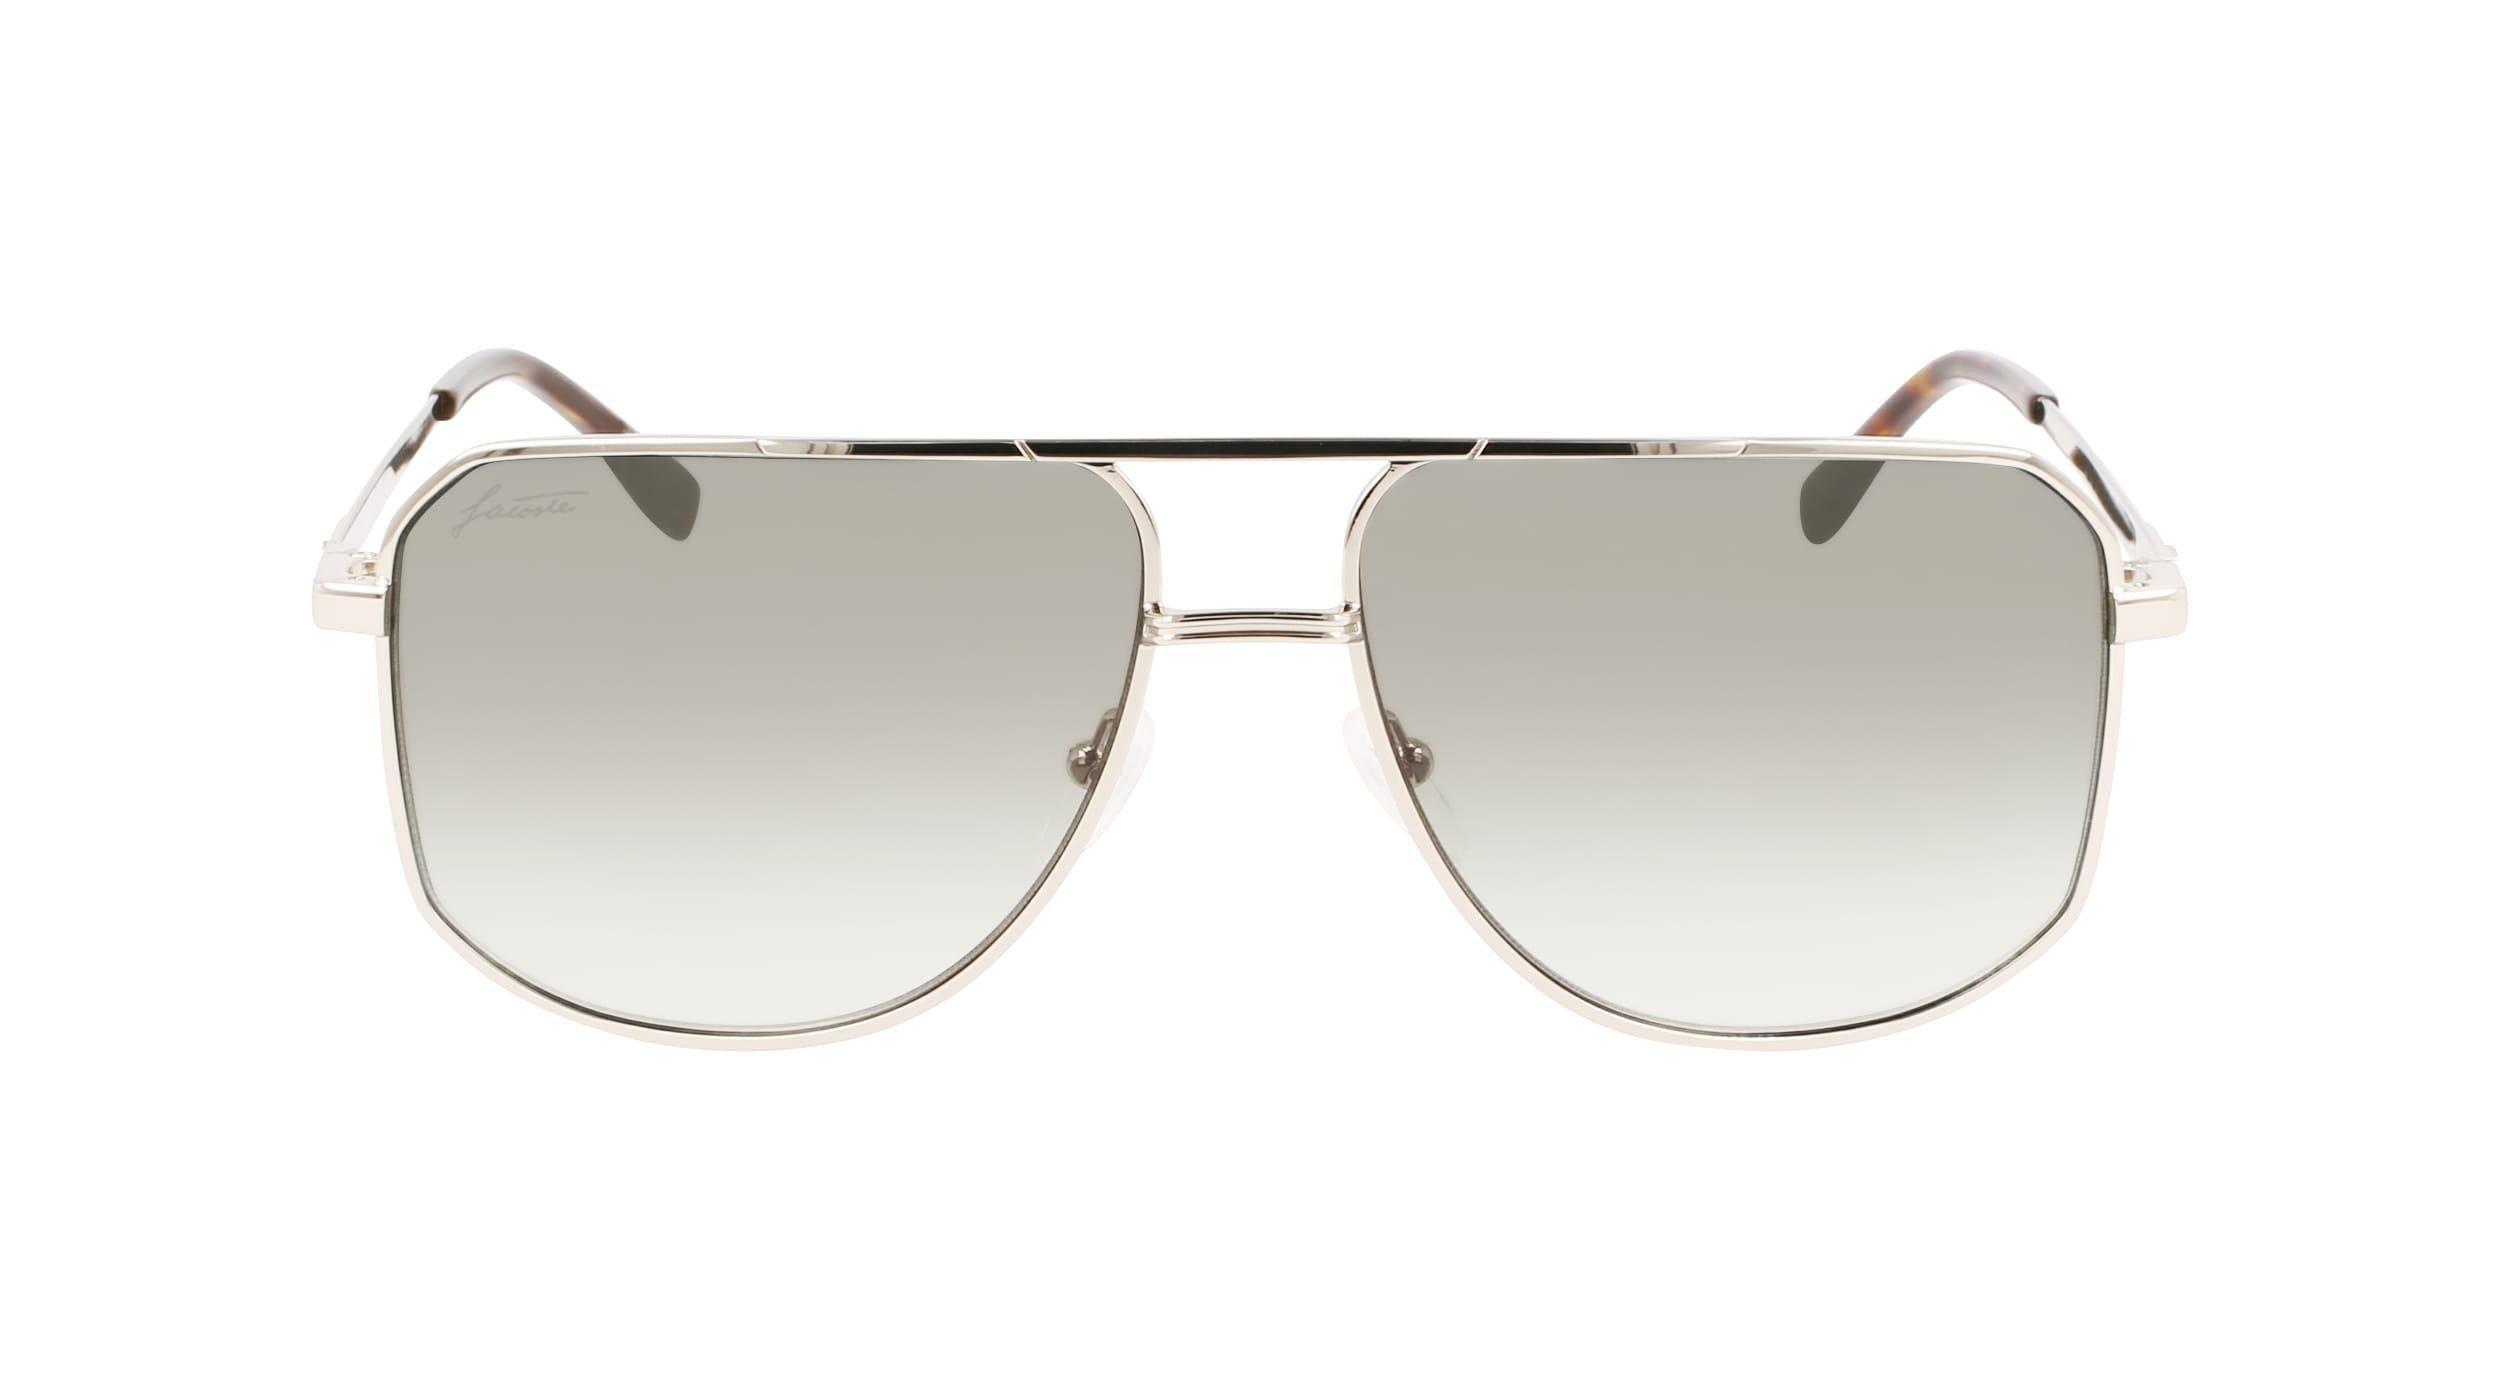 LACOSTE - Lacoste Unisex Silver Modified Rectangle Sunglasses - L249Se